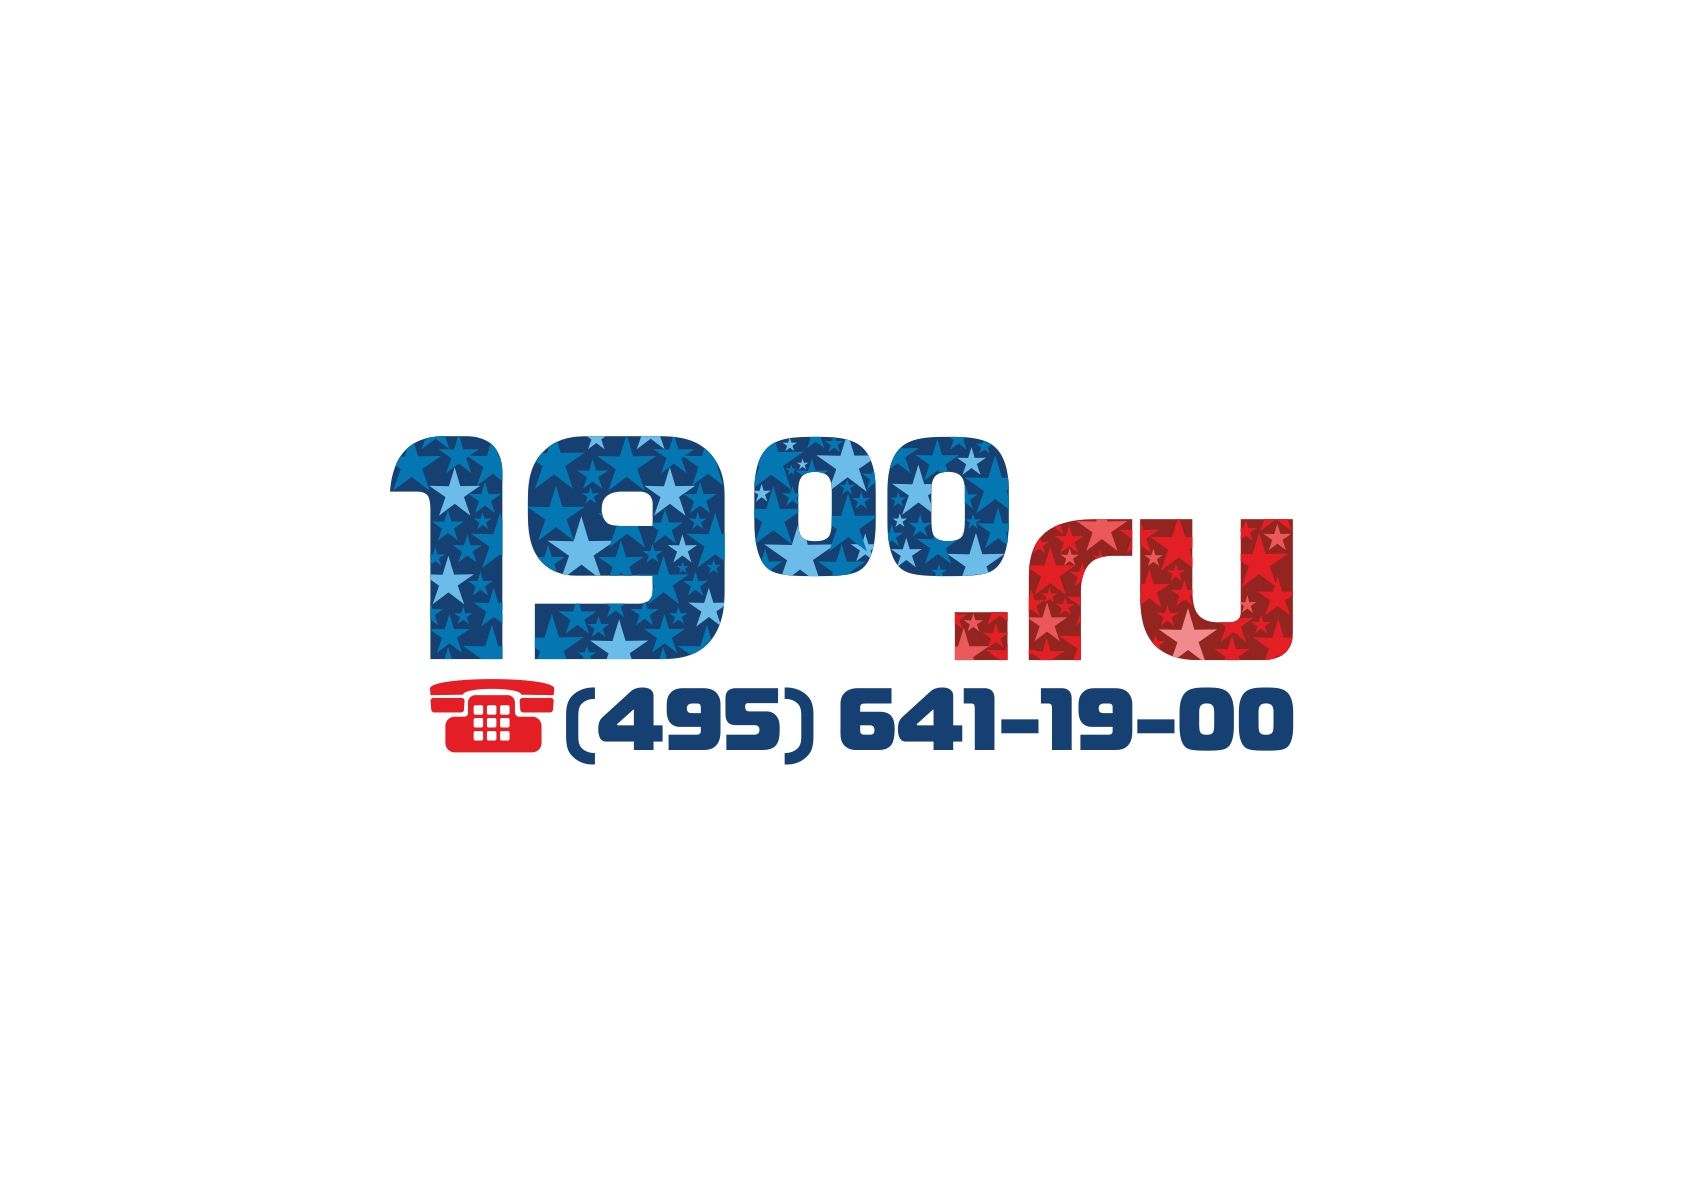 Логотип 19-00.RU - дизайнер designer79